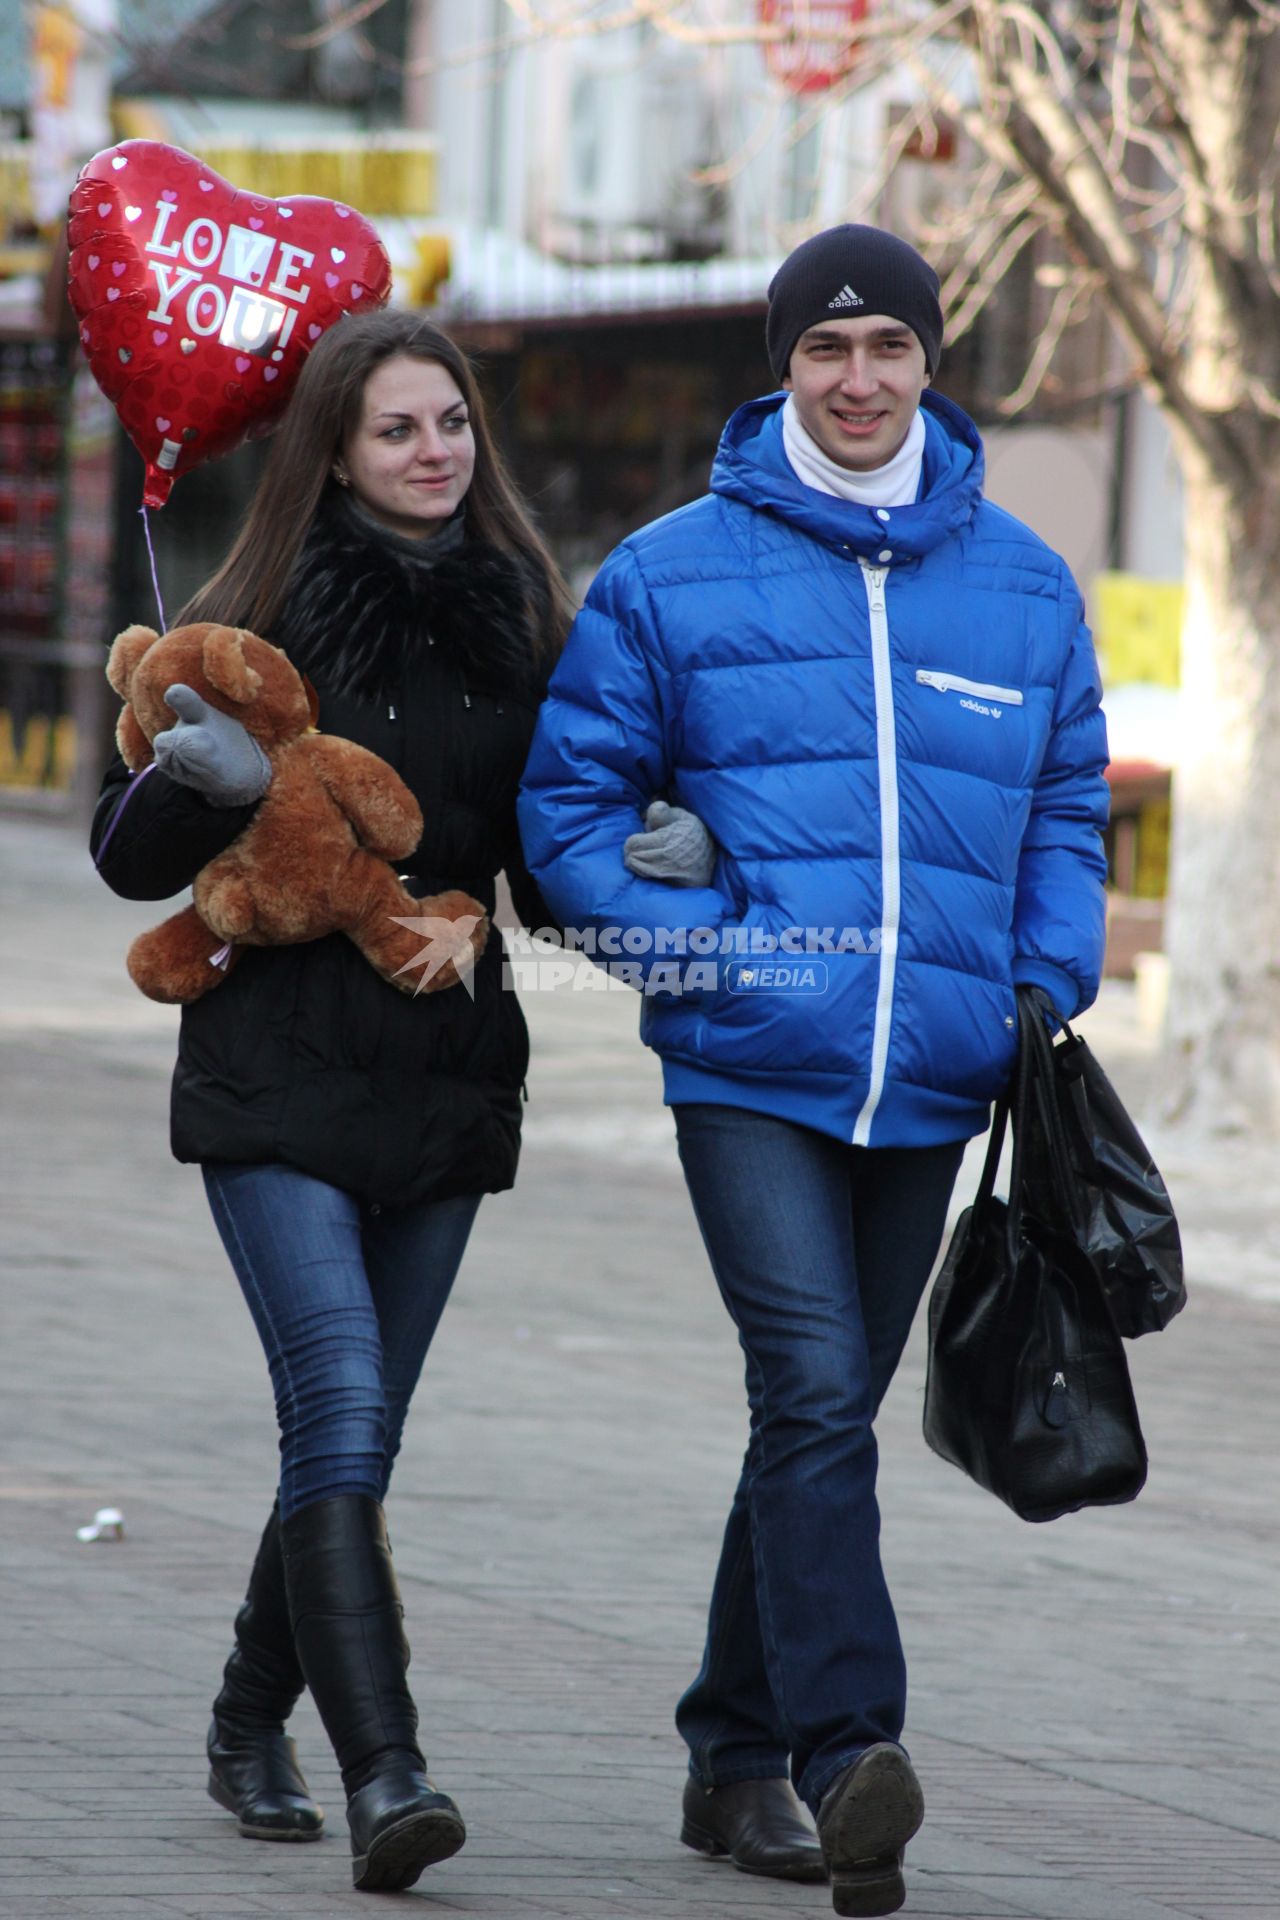 Мужчина и женщина идут подруку. У женщины в руках плюшевый медведь и надувной шар в виде сердца.